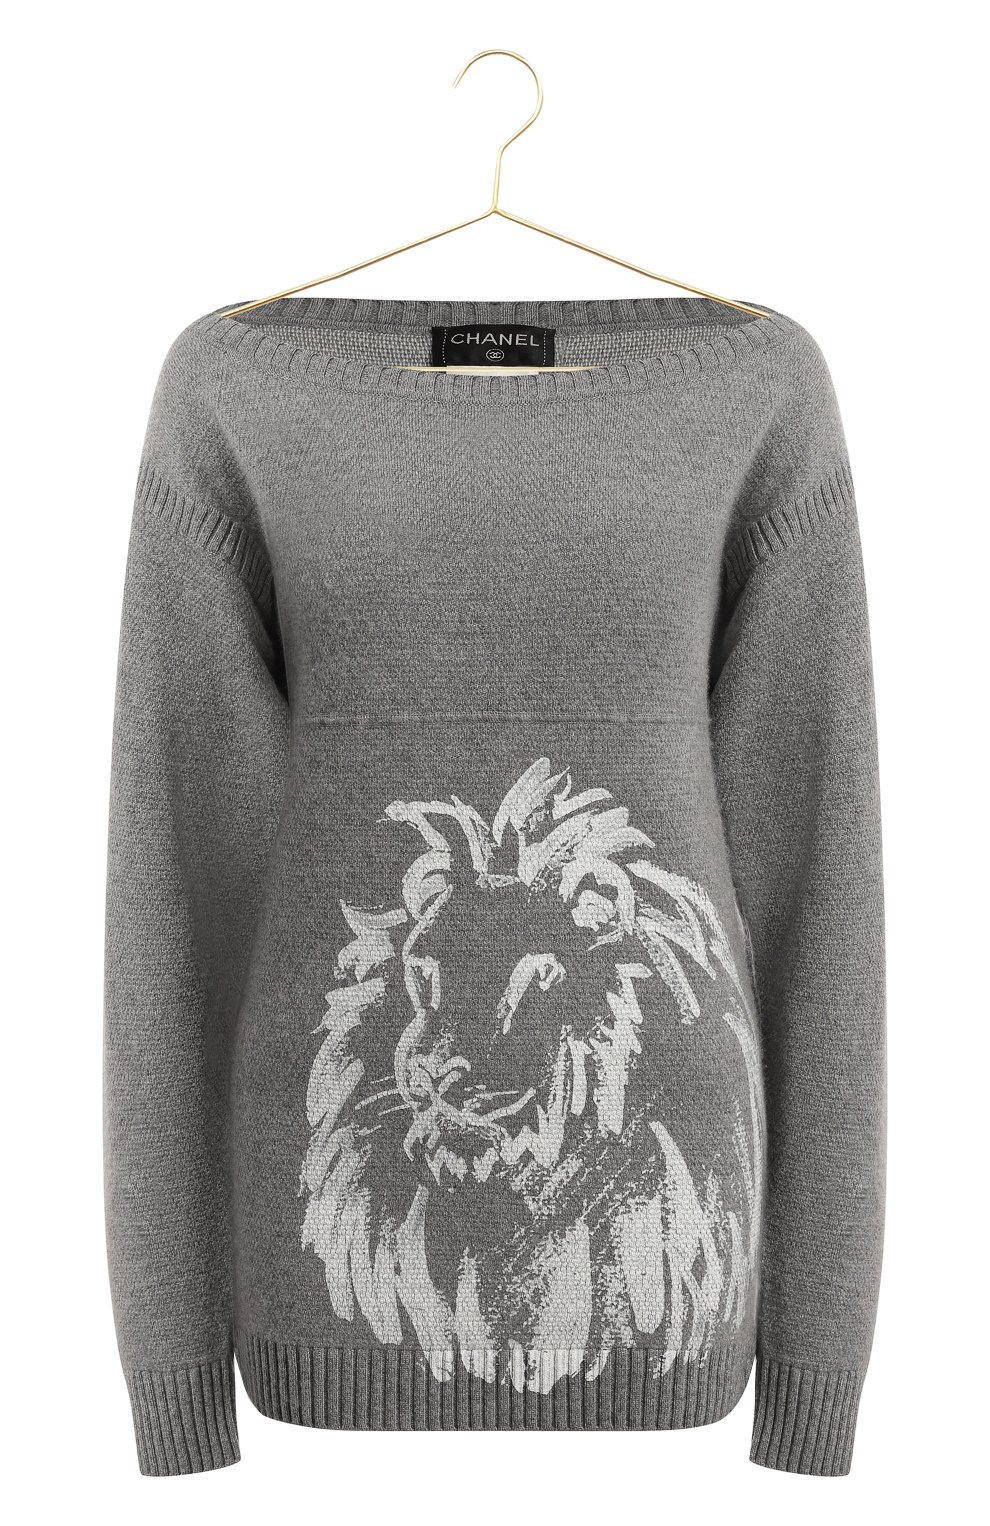 Кашемировый свитер | Chanel | Серый - 1